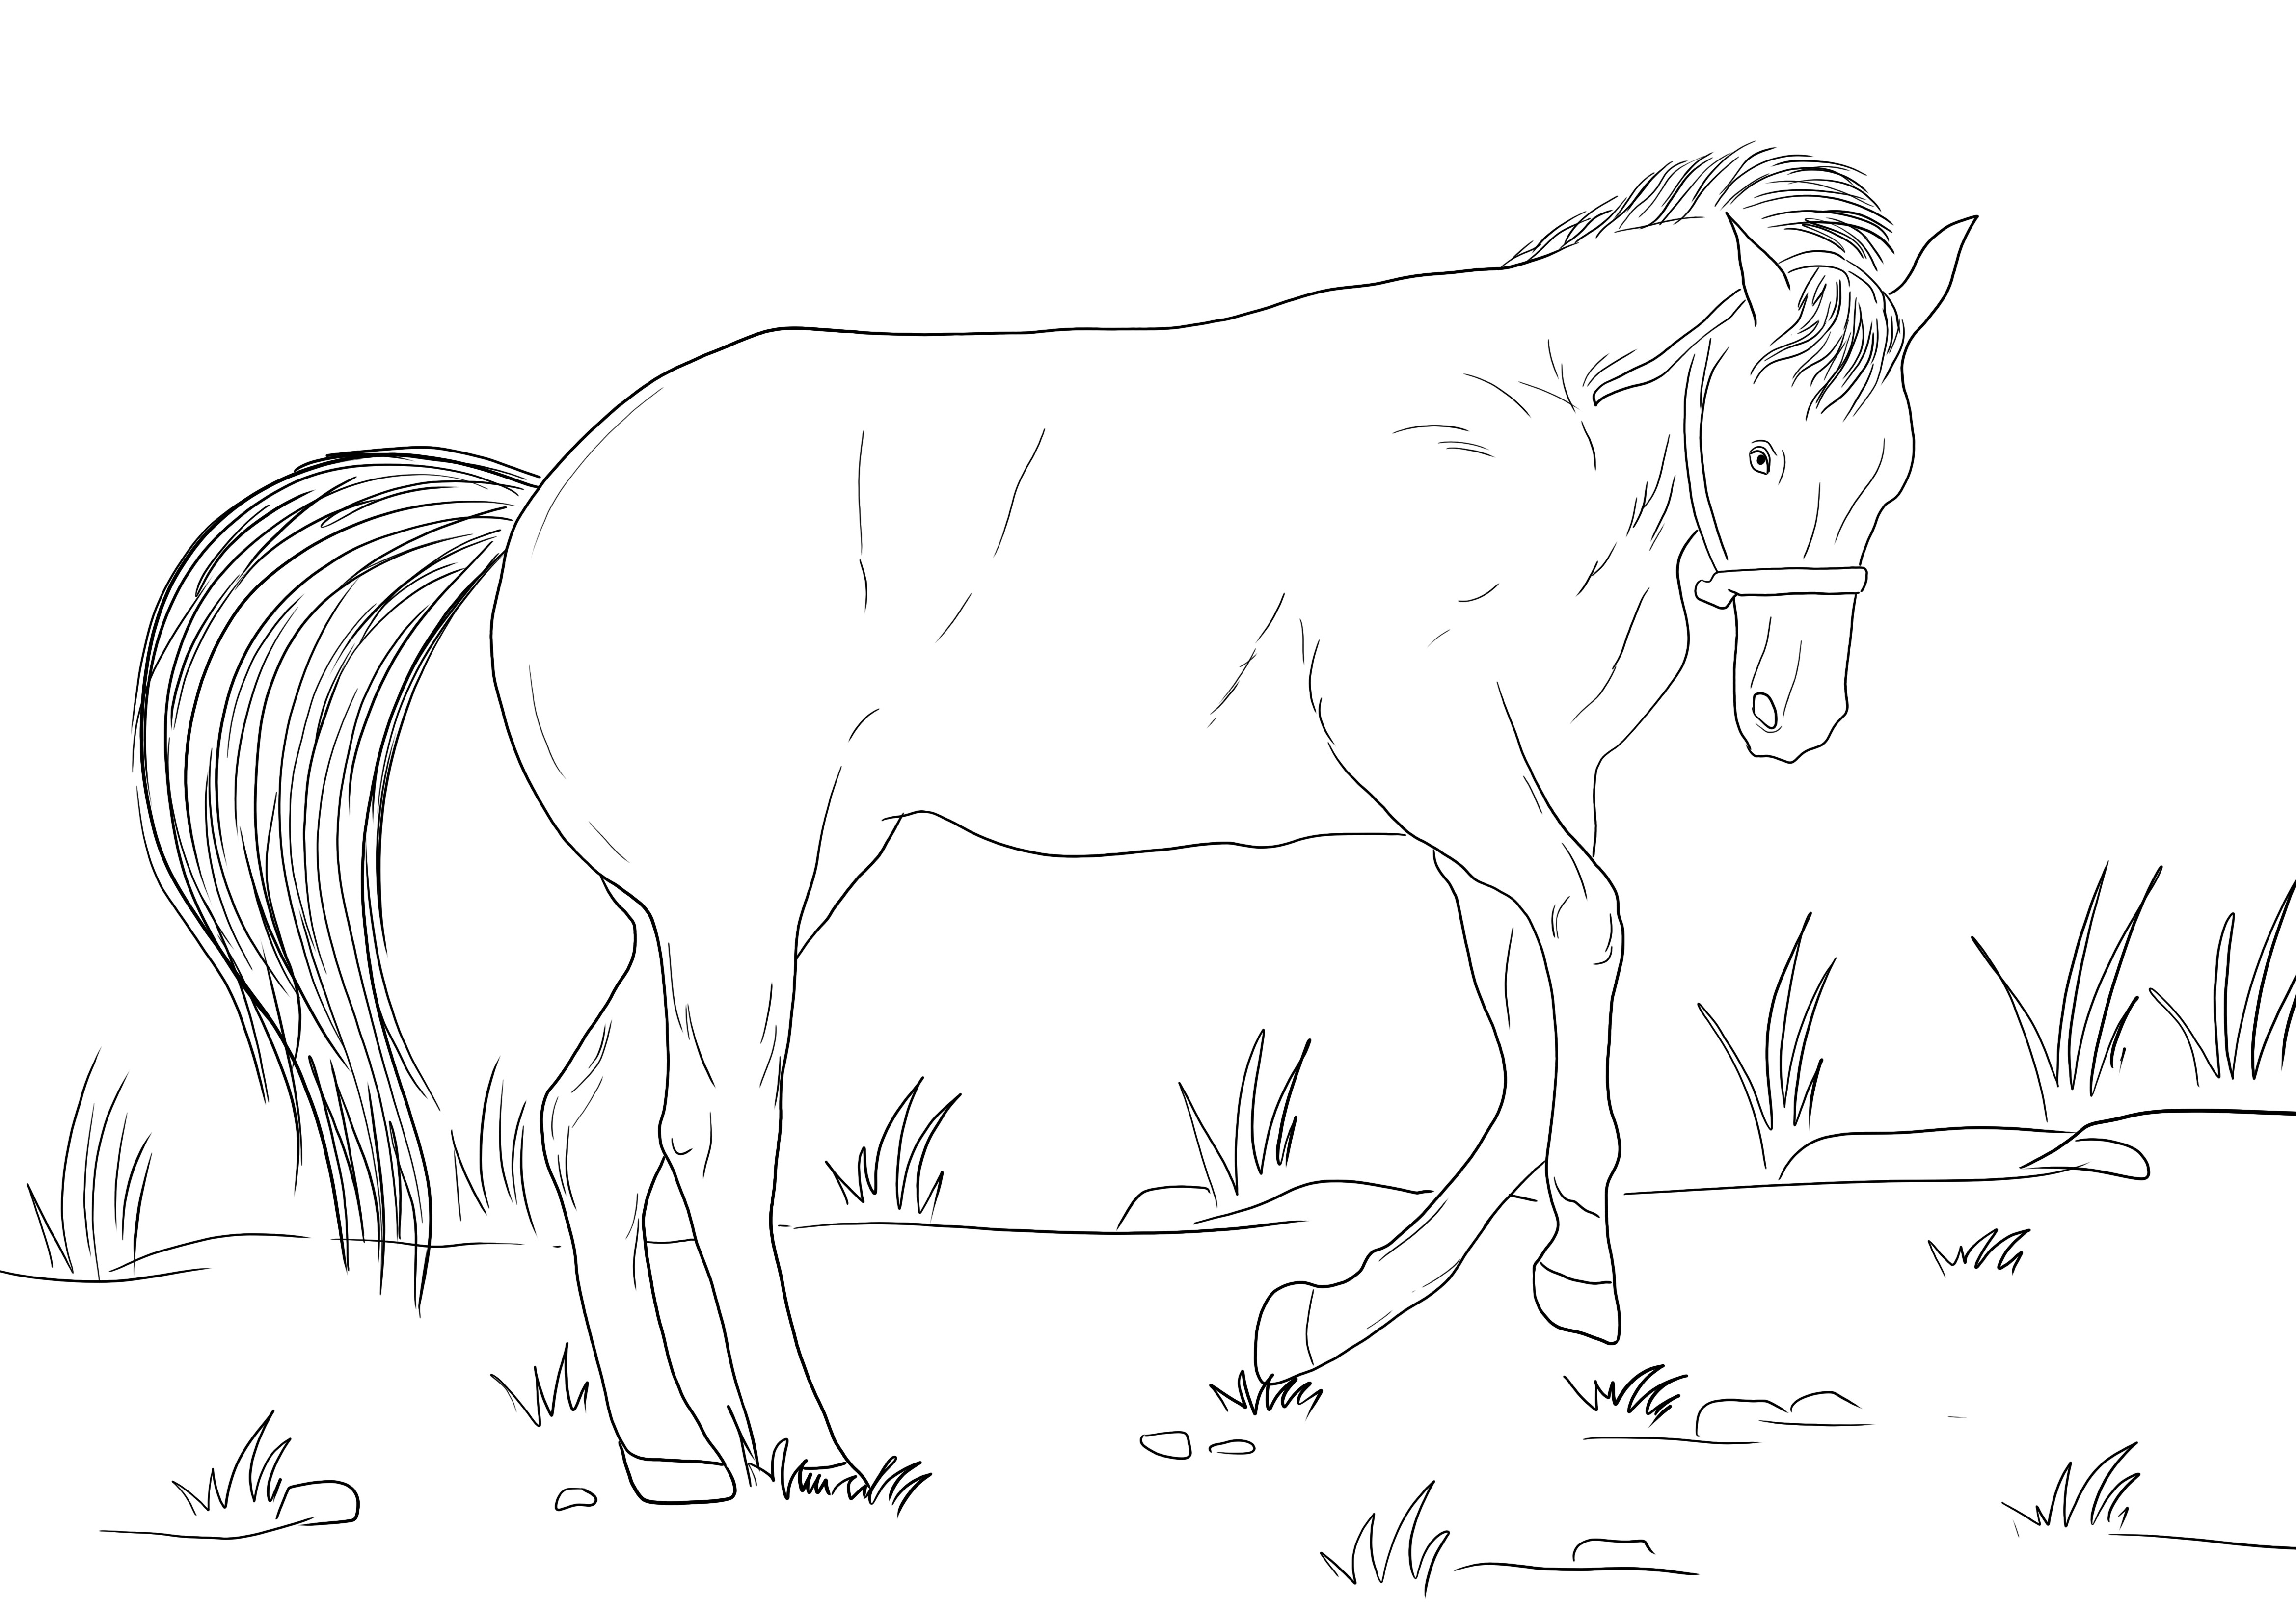 O imagine de colorat a unui cal înclinat imprimabilă gratuit pentru ca copiii să învețe despre animale